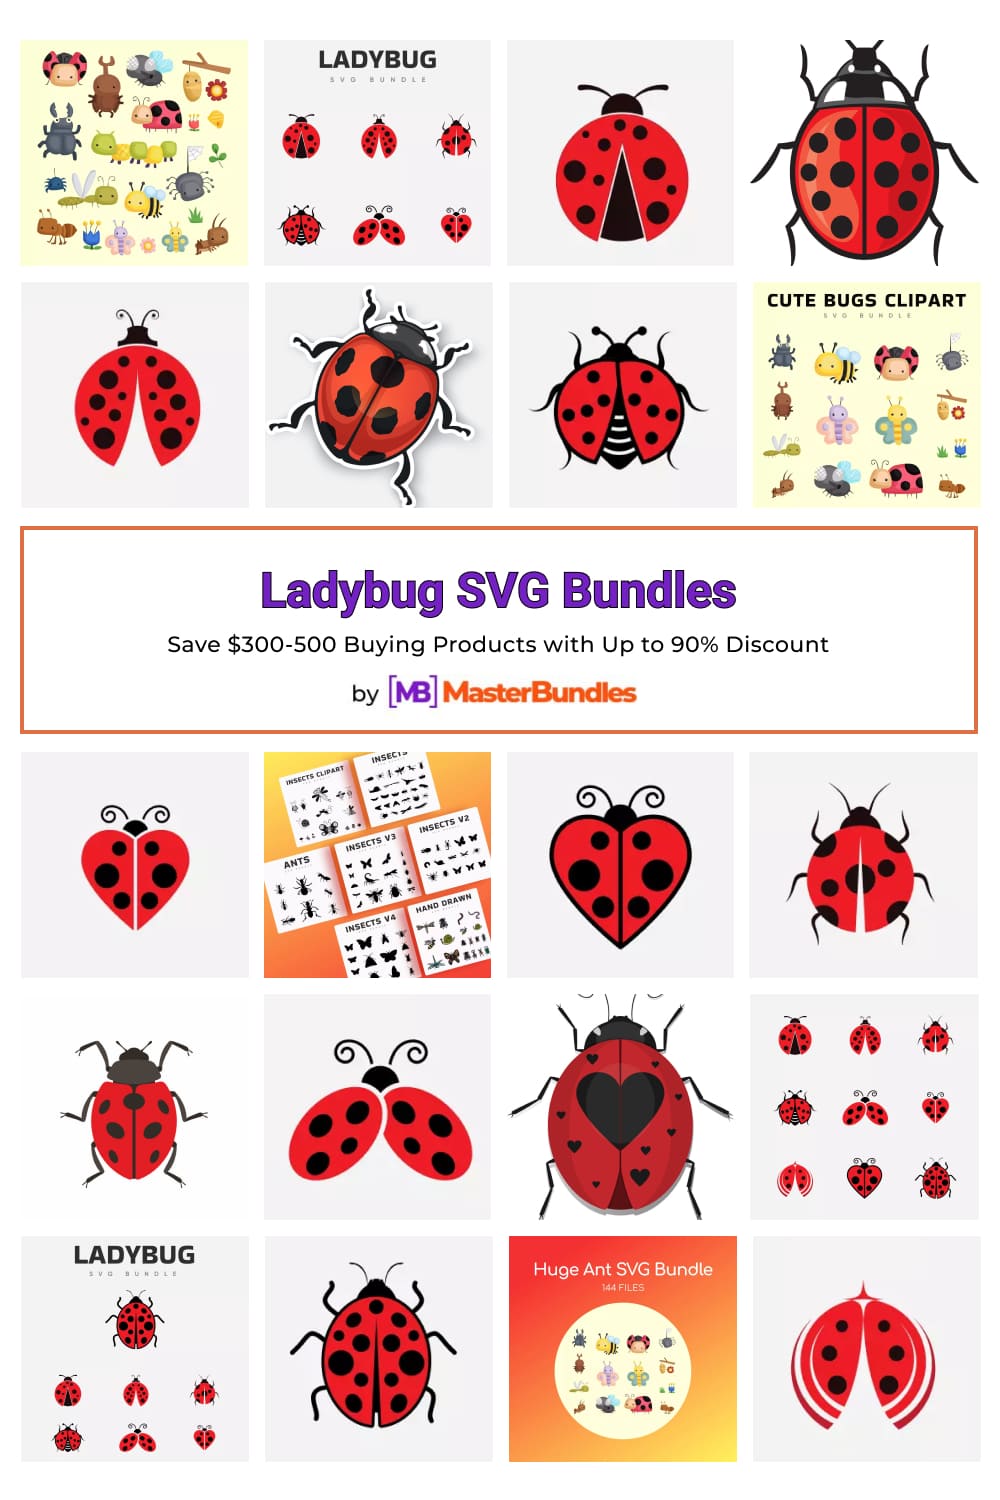 Ladybug SVG Bundles for Pinterest.